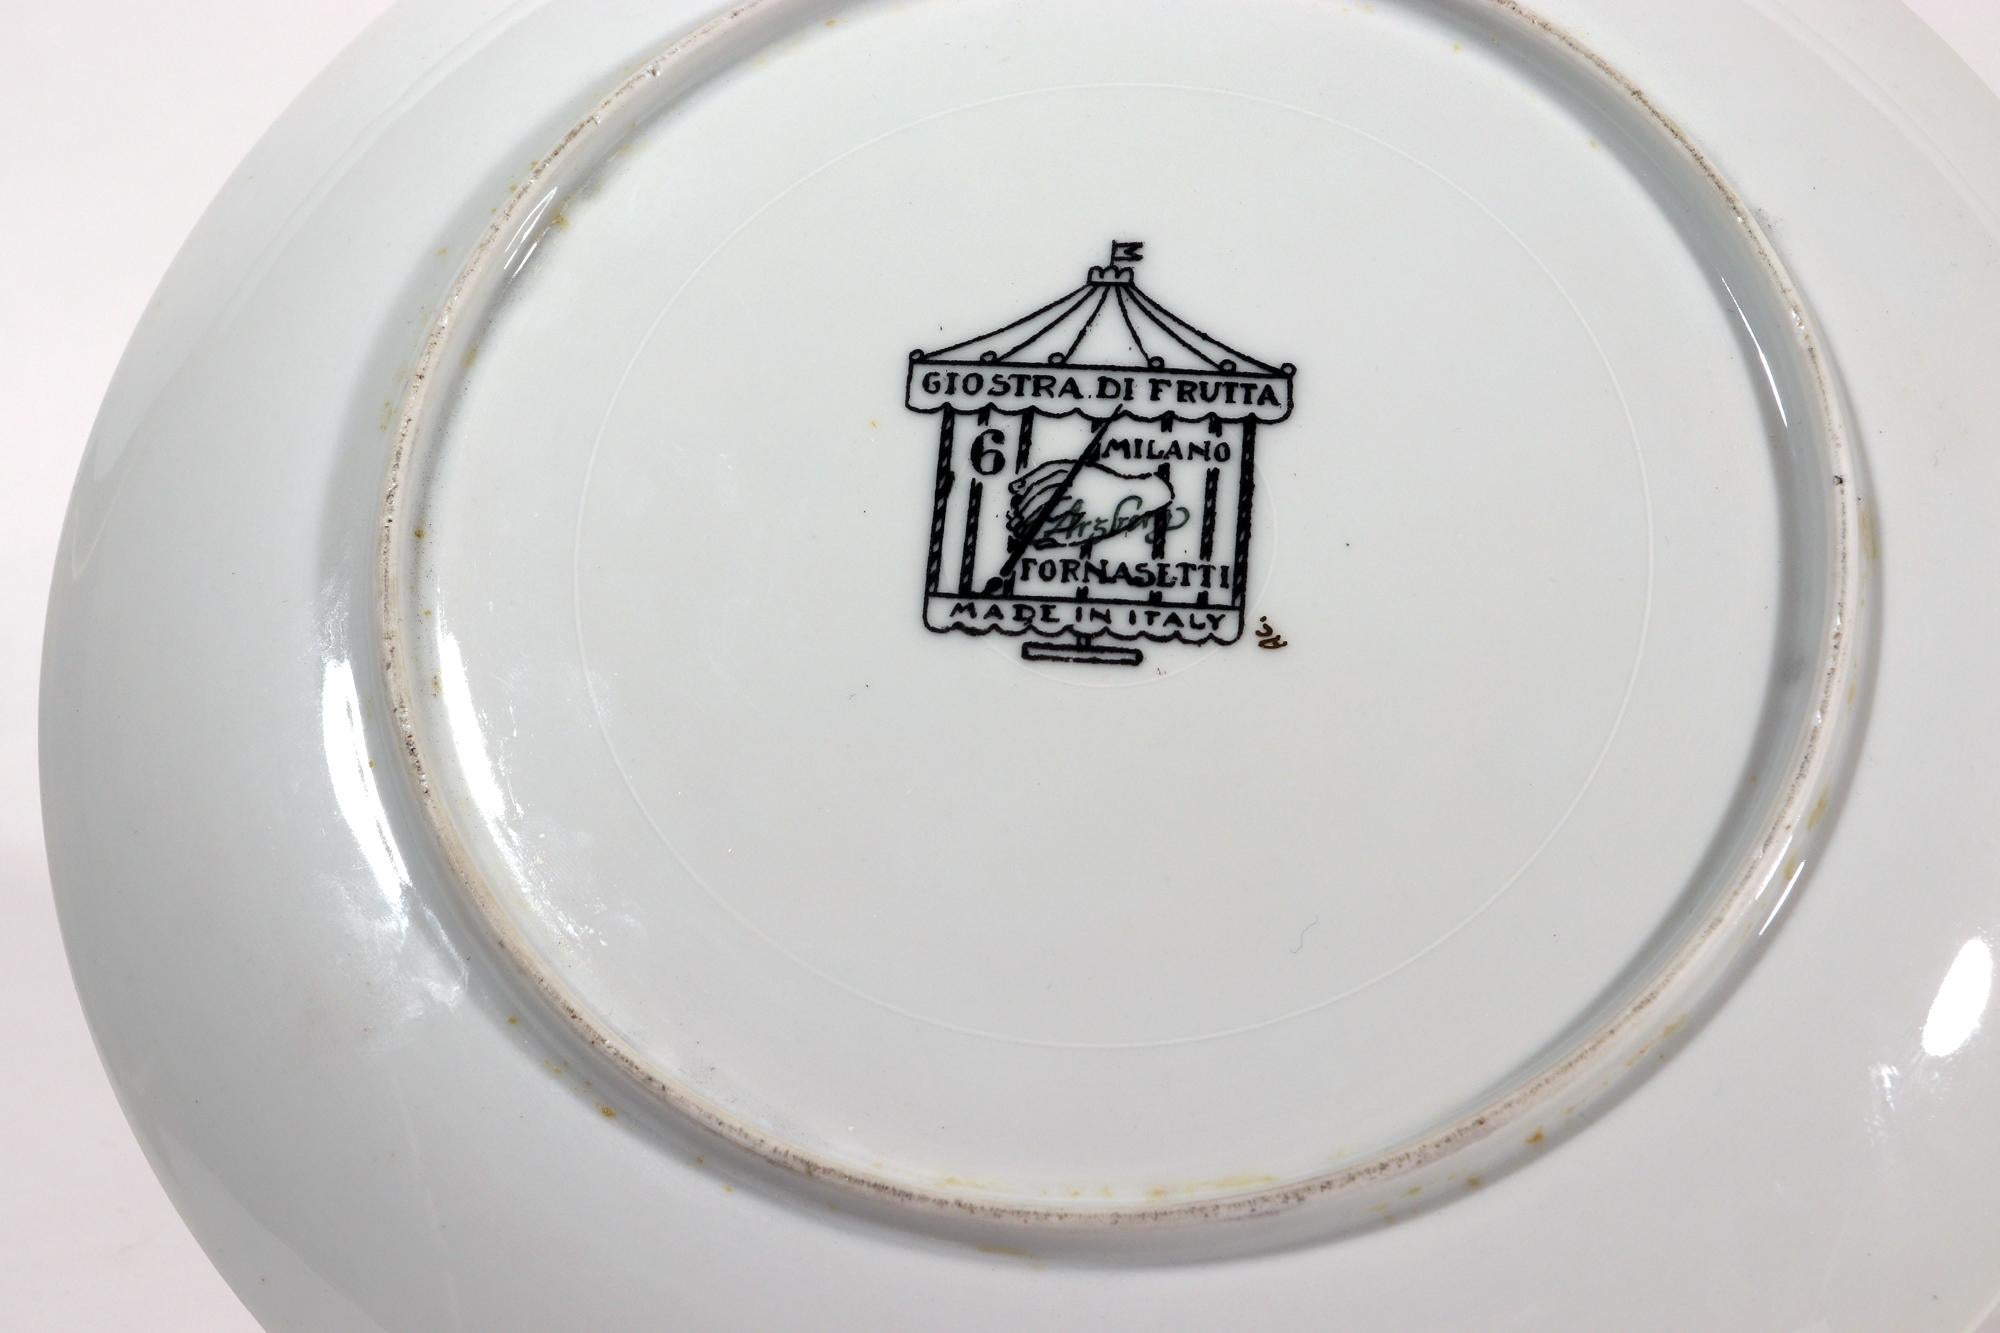 Italian Piero Fornasetti Porcelain Plate, Giastra Di Frutta # 6 For Sale